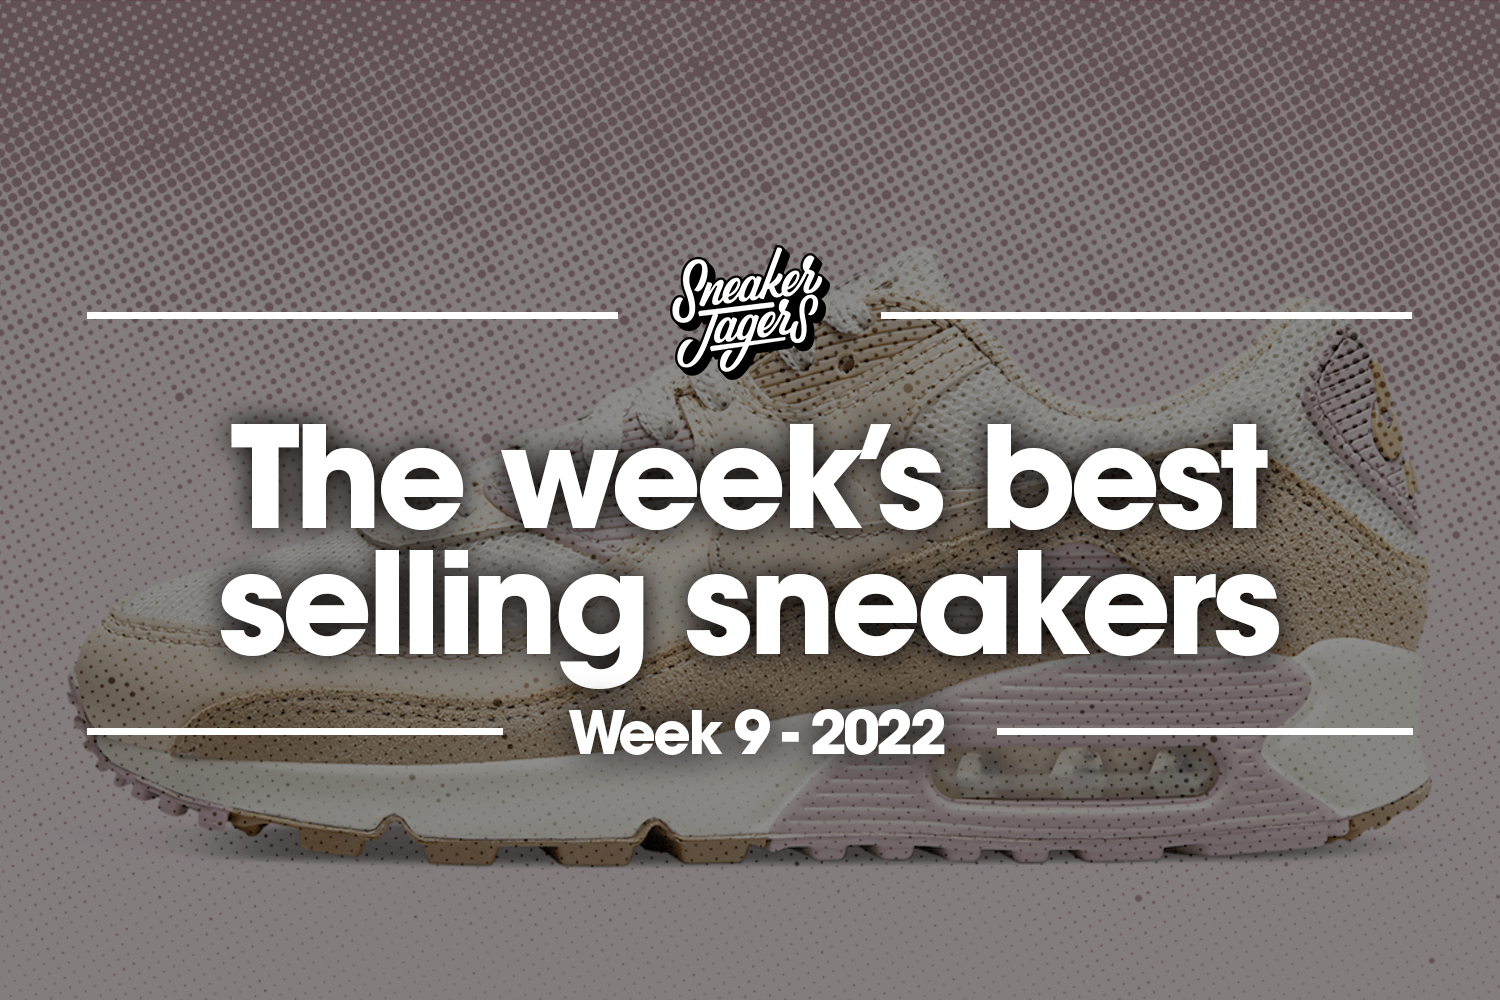 The 5 best-selling sneakers of week 9